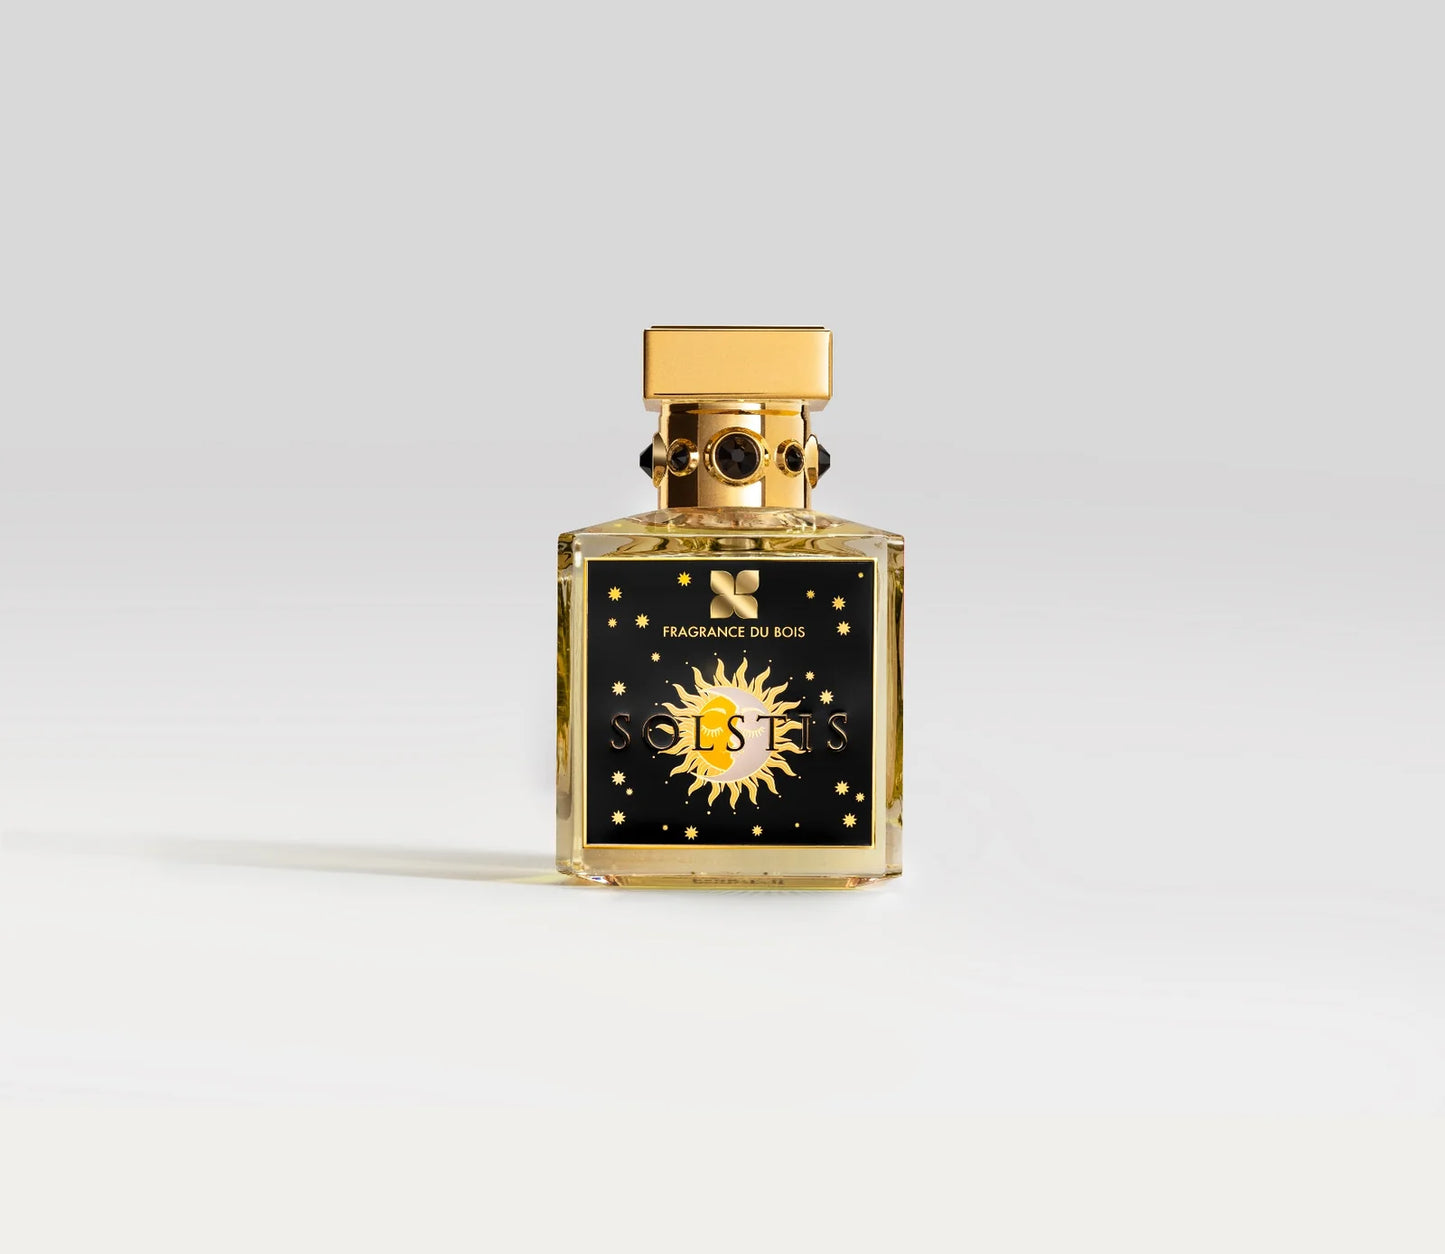 Parfüm Flakon von Fragrance Du Bois Solstis mit goldenem Deckel